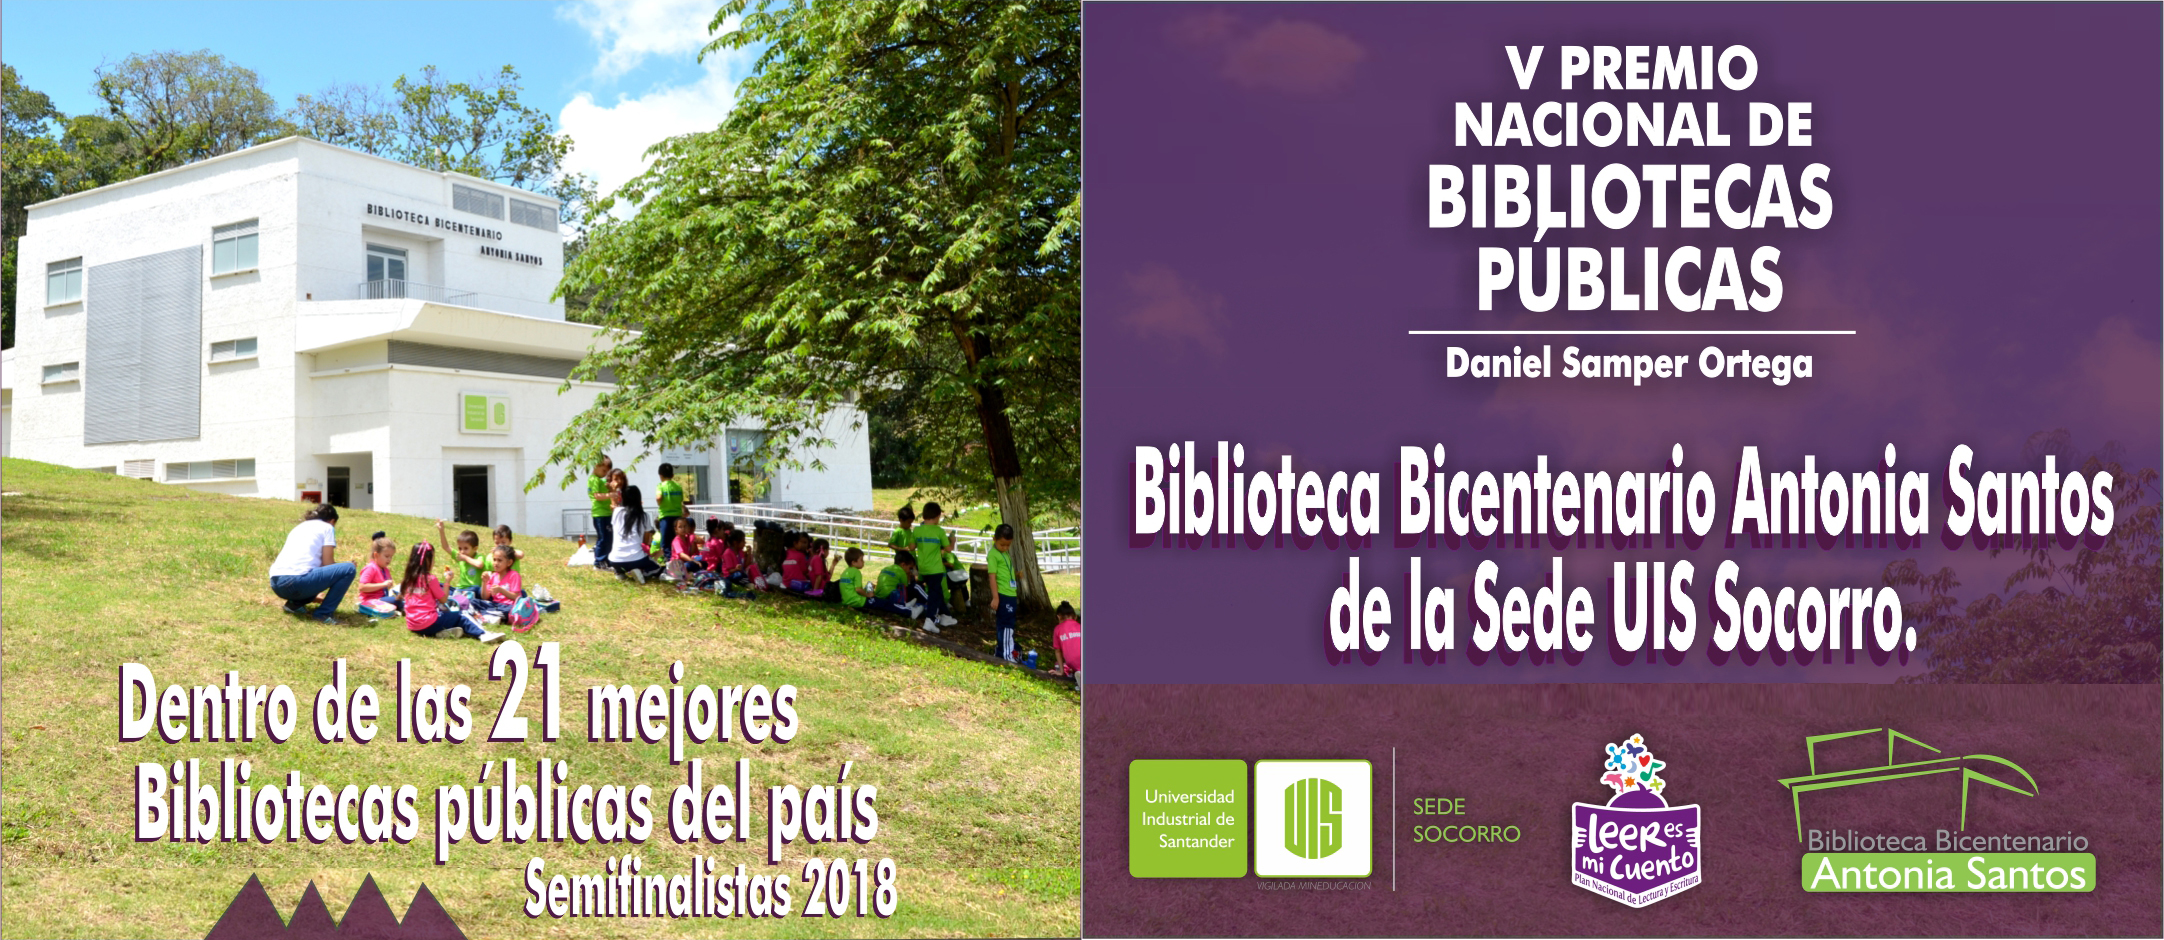 La Biblioteca Bicentenario Antonia Santos de la UIS Socorro – Entre las mejores del país